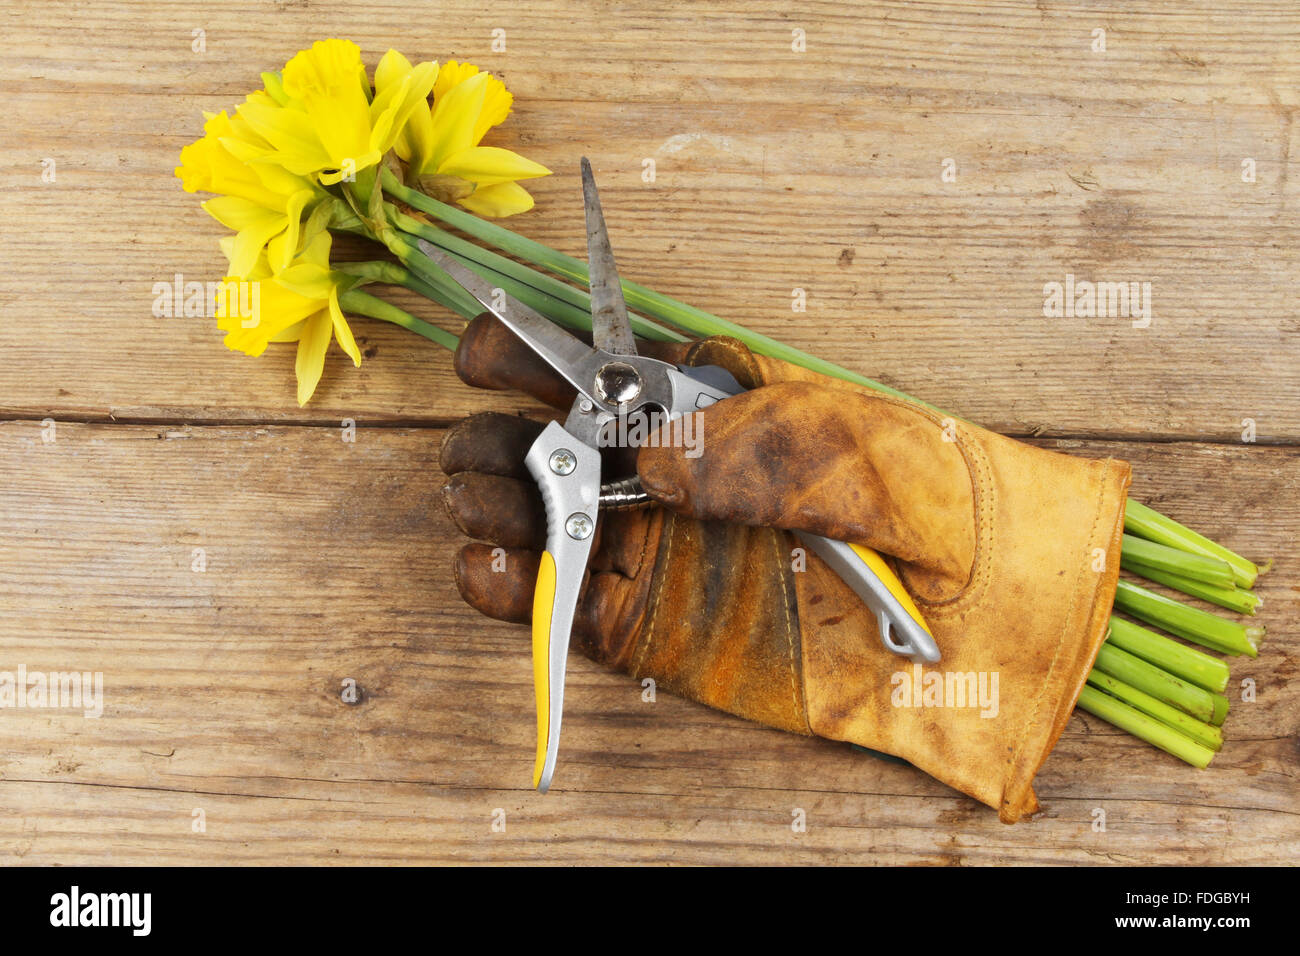 Frisch geschnitten Sie Narzissen mit Gartenarbeit angegossen und Gartenschere auf einem Holzbrett Stockfoto